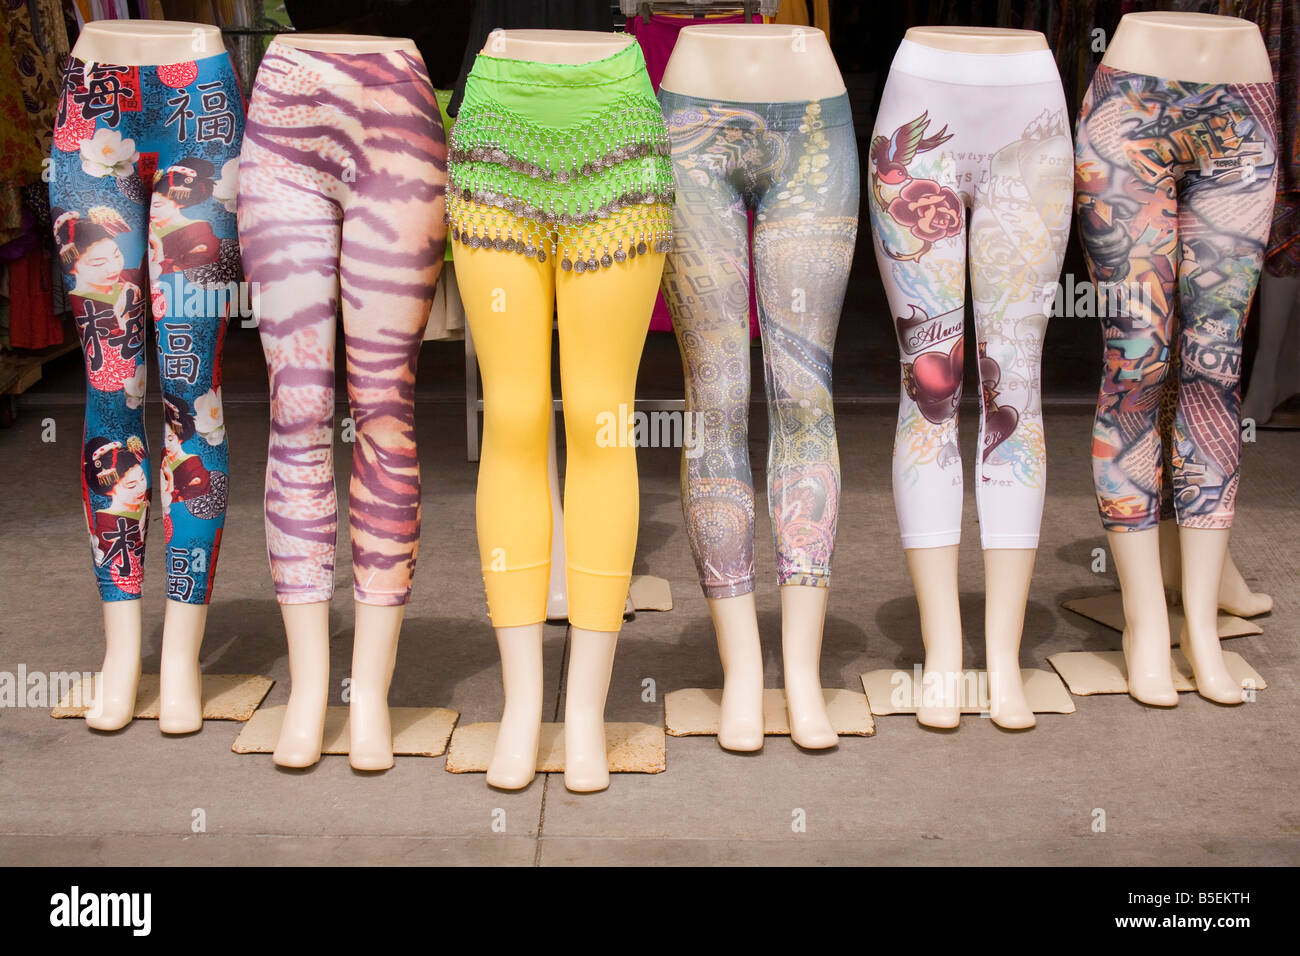 Eine Gruppe von Schaufensterpuppe Beine außerhalb eine legere Kleidung Shop, ein anderes paar bunte Leggins oder Strumpfhosen tragen angezeigt Stockfoto